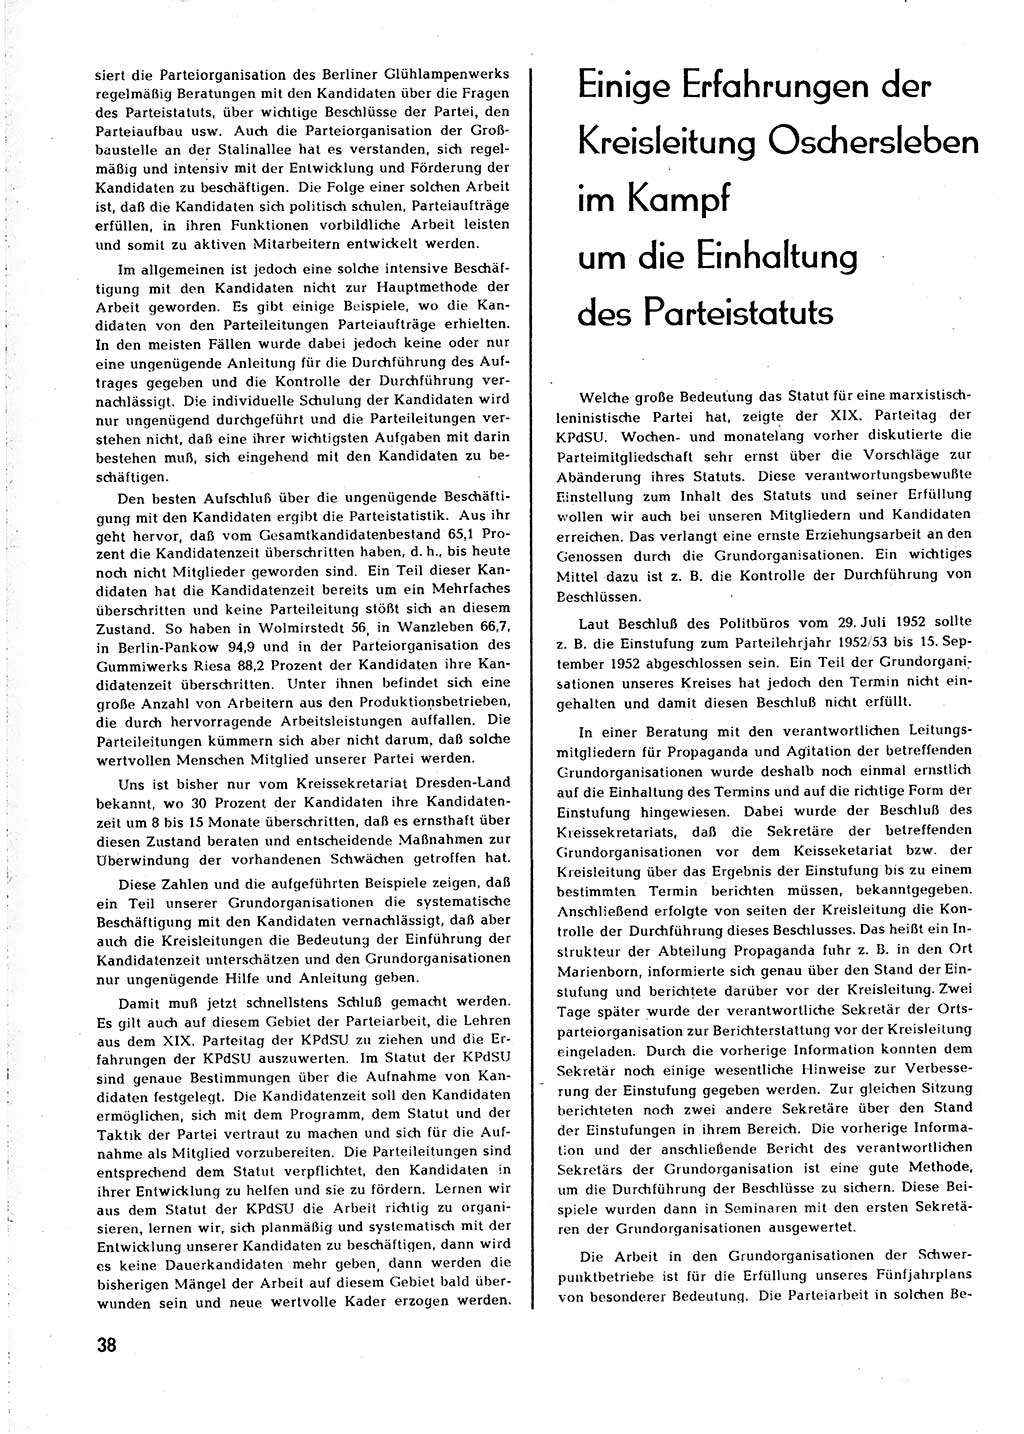 Neuer Weg (NW), Organ des Zentralkomitees (ZK) [Sozialistische Einheitspartei Deutschlands (SED)] für alle Parteiarbeiter, 8. Jahrgang [Deutsche Demokratische Republik (DDR)] 1953, Heft 1/38 (NW ZK SED DDR 1953, H. 1/38)